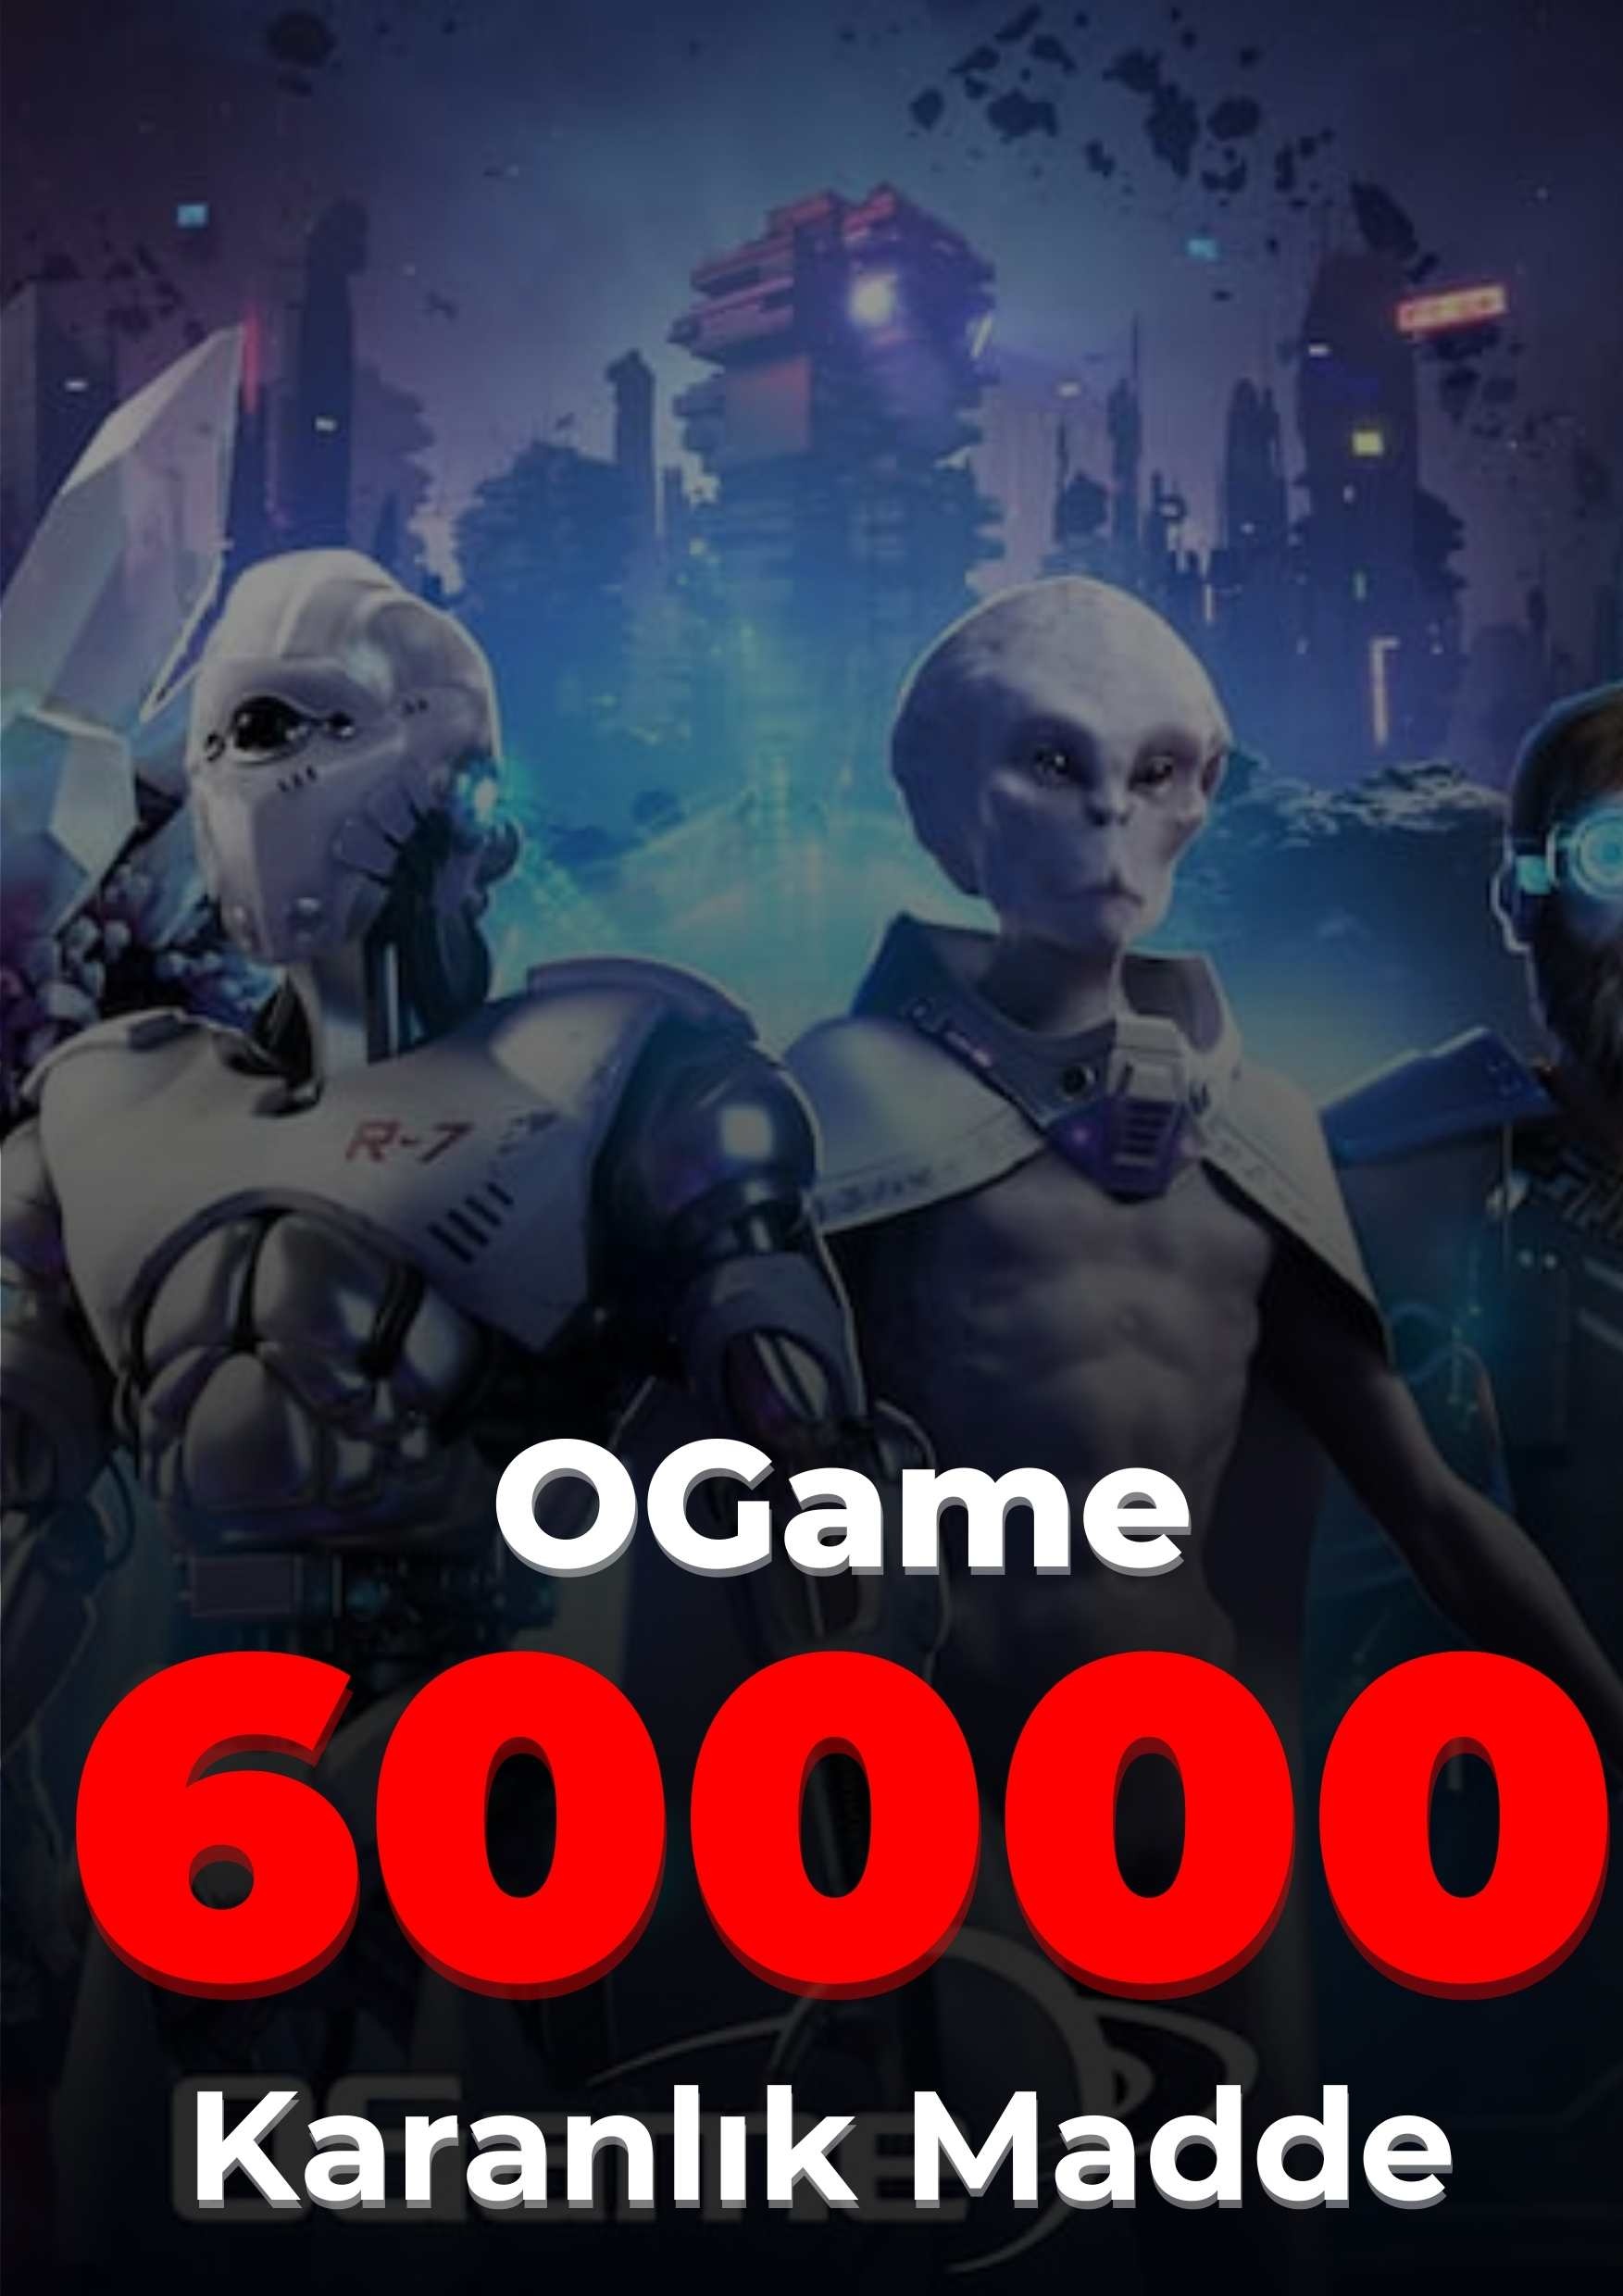 OGame 60000 Karanlık Madde